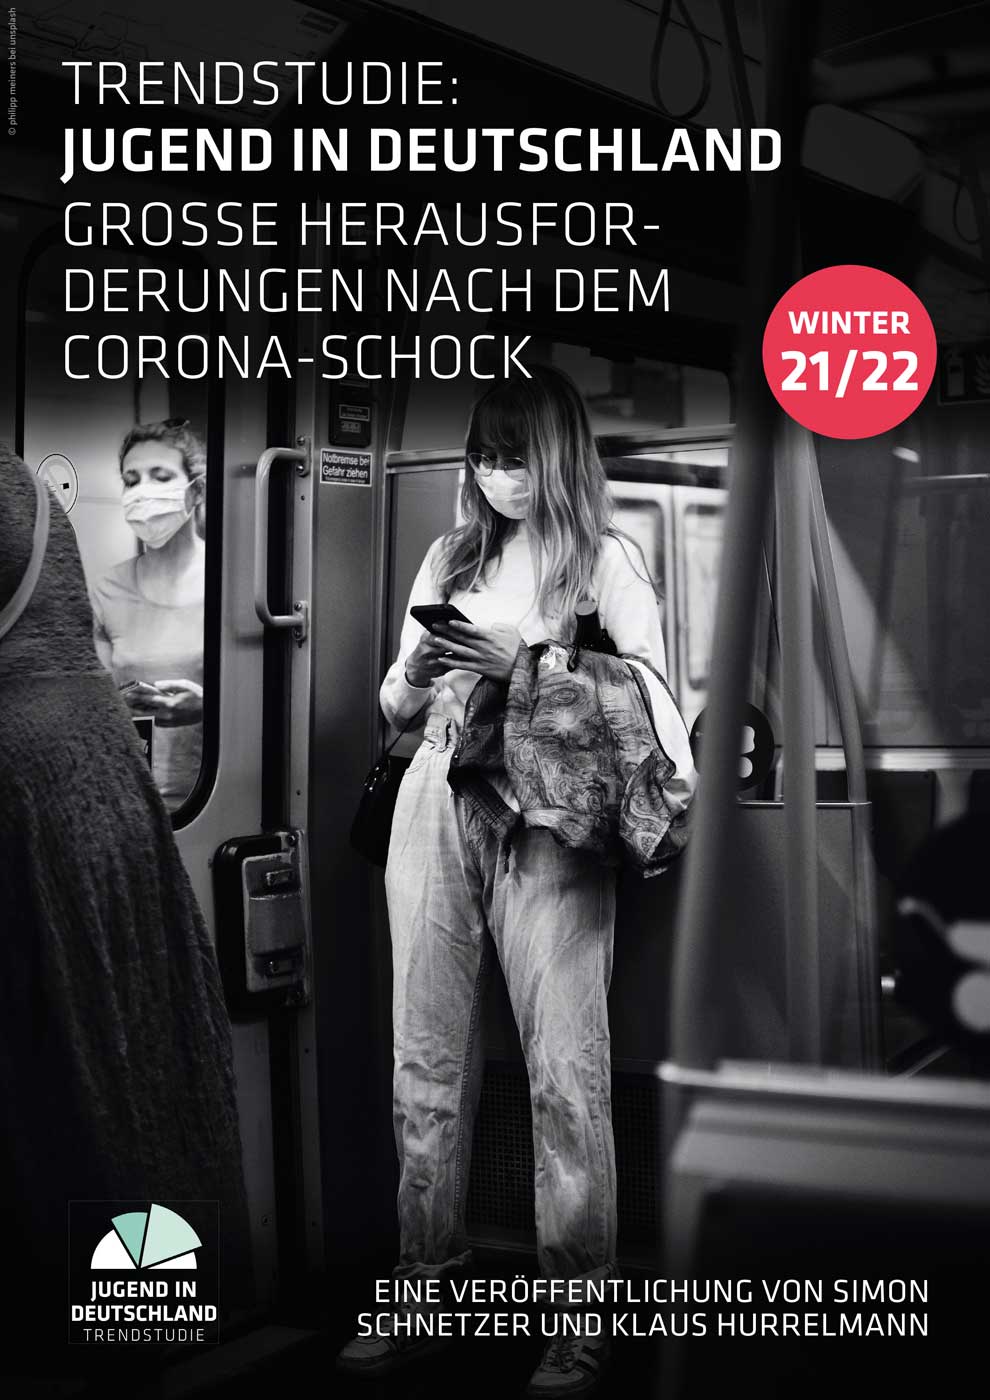 Cover - Jugend in Deutschland - Trendstudie: Winter 21/22